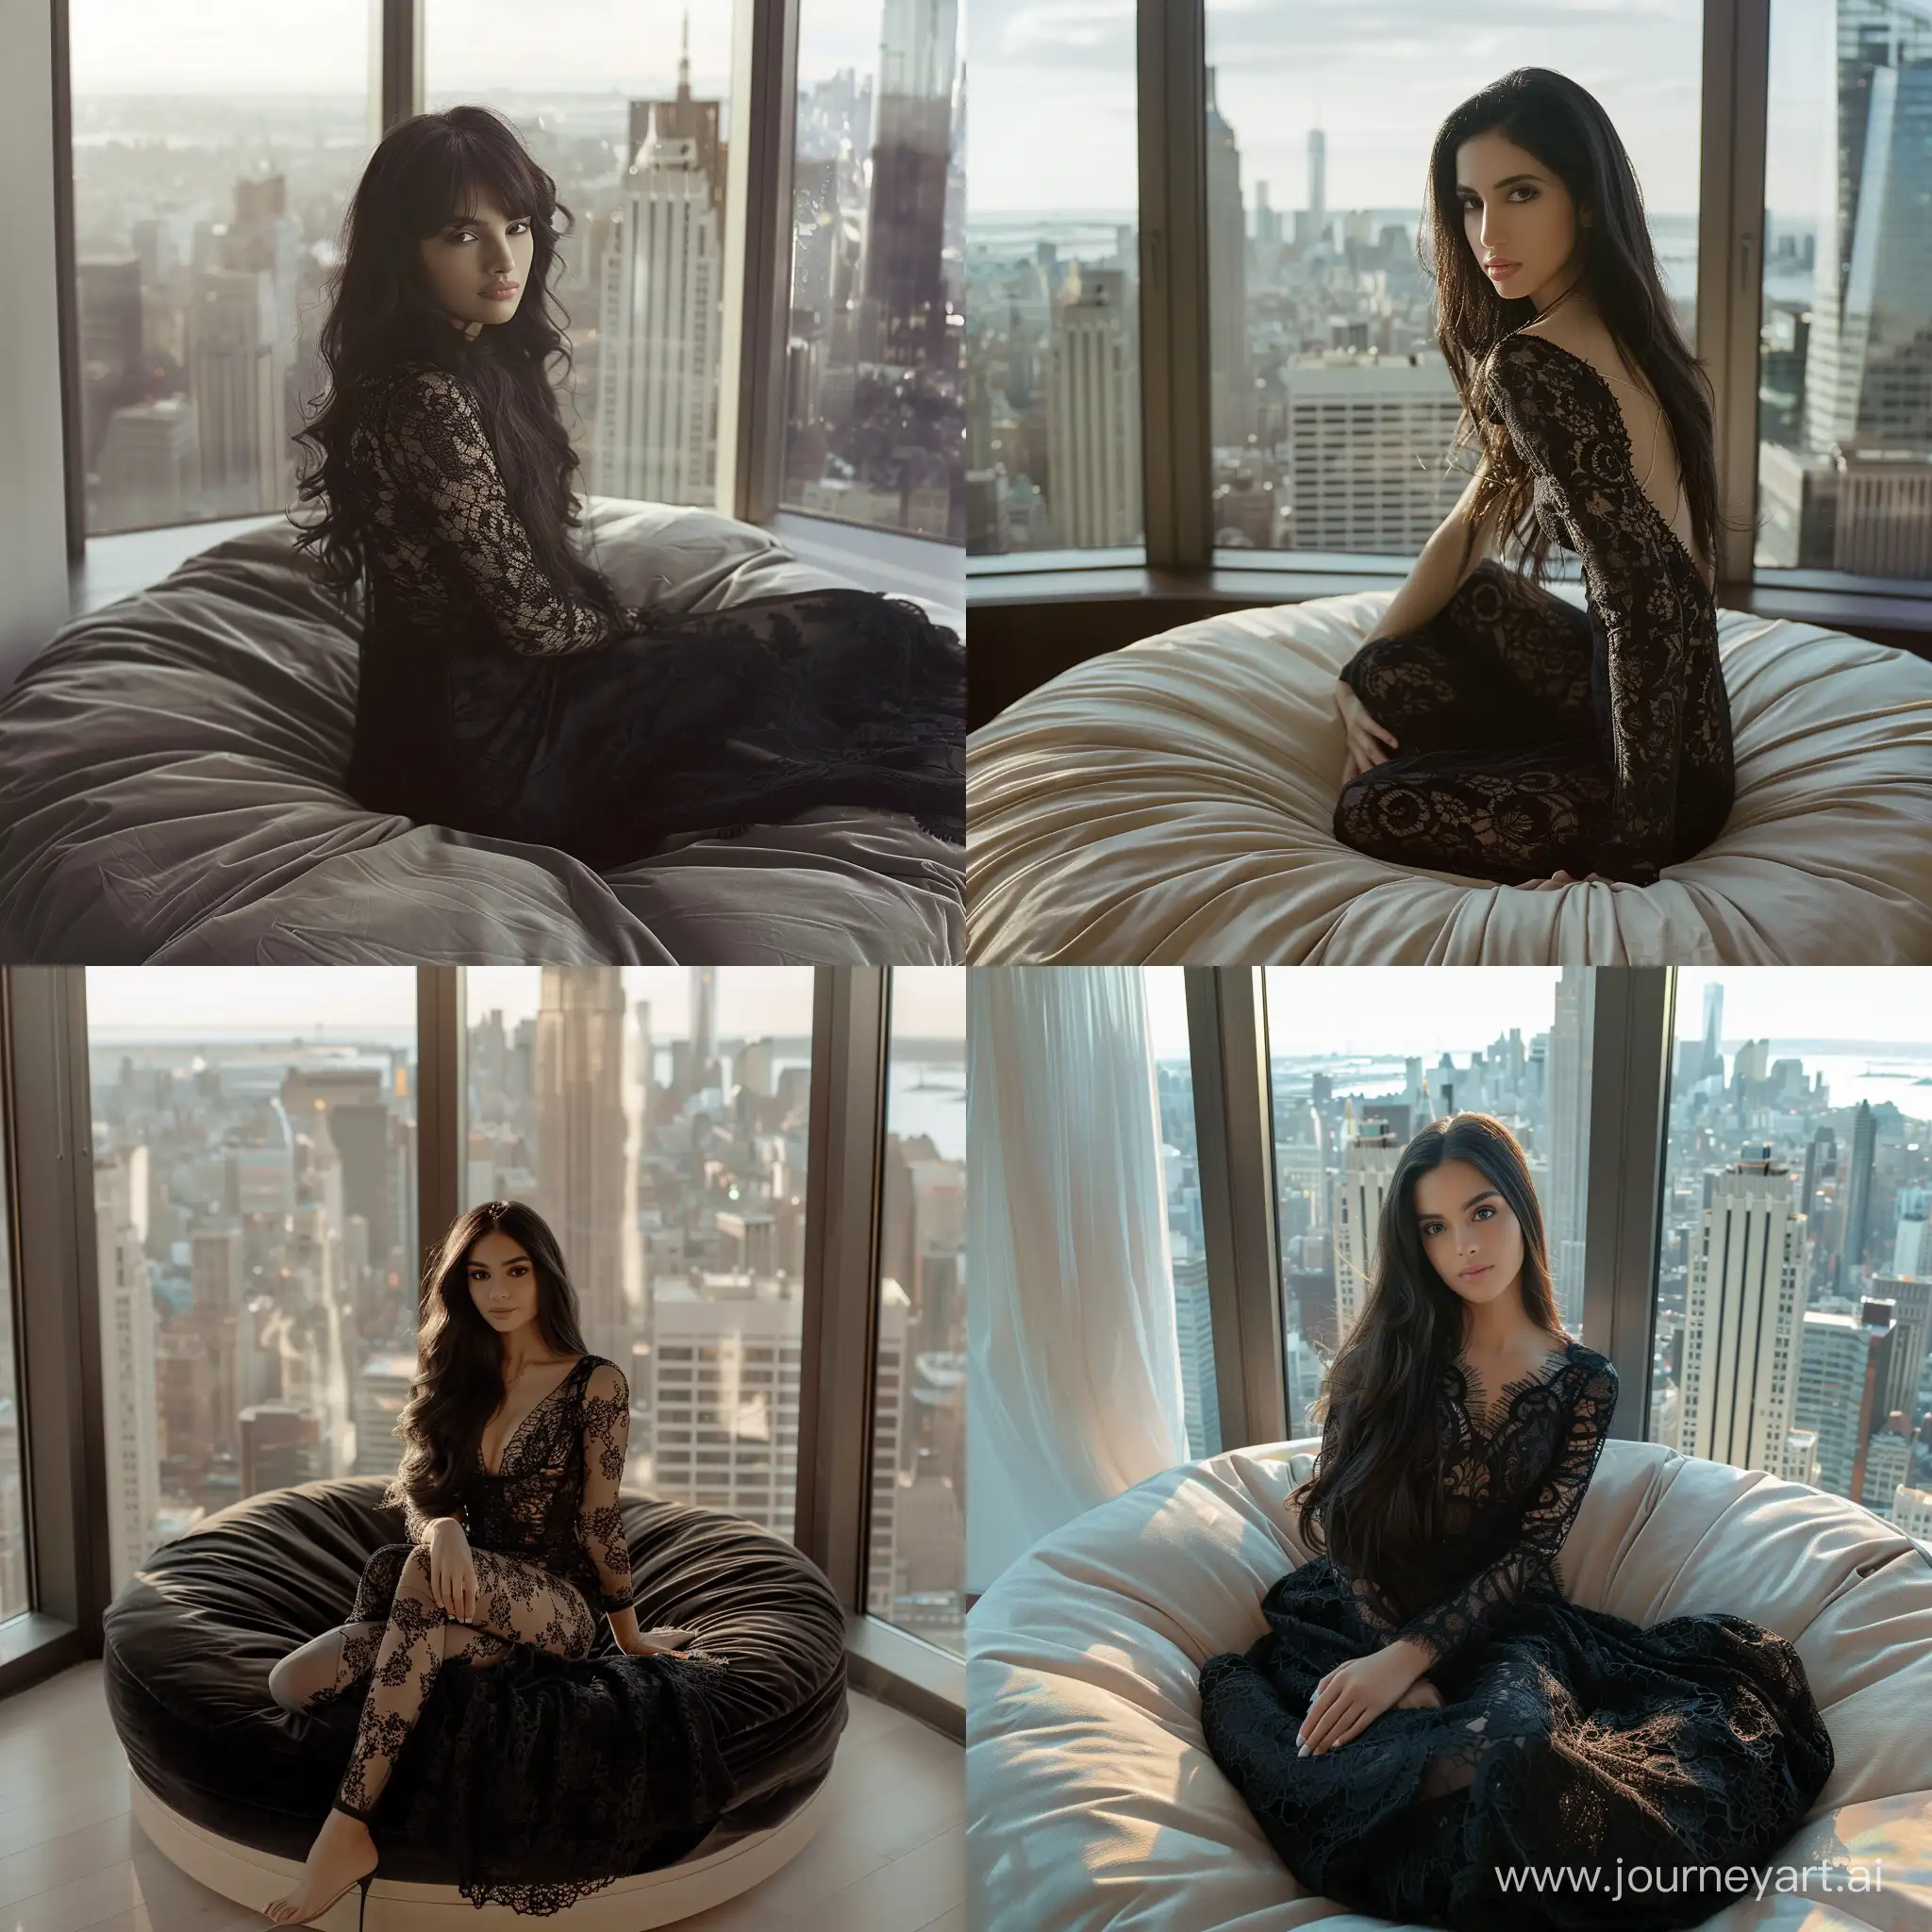 темноволосая девушка на фотосессии, на круглой кровати, кружевное черное платье, светлые тона, большое окно с видом на Нью-Йорк